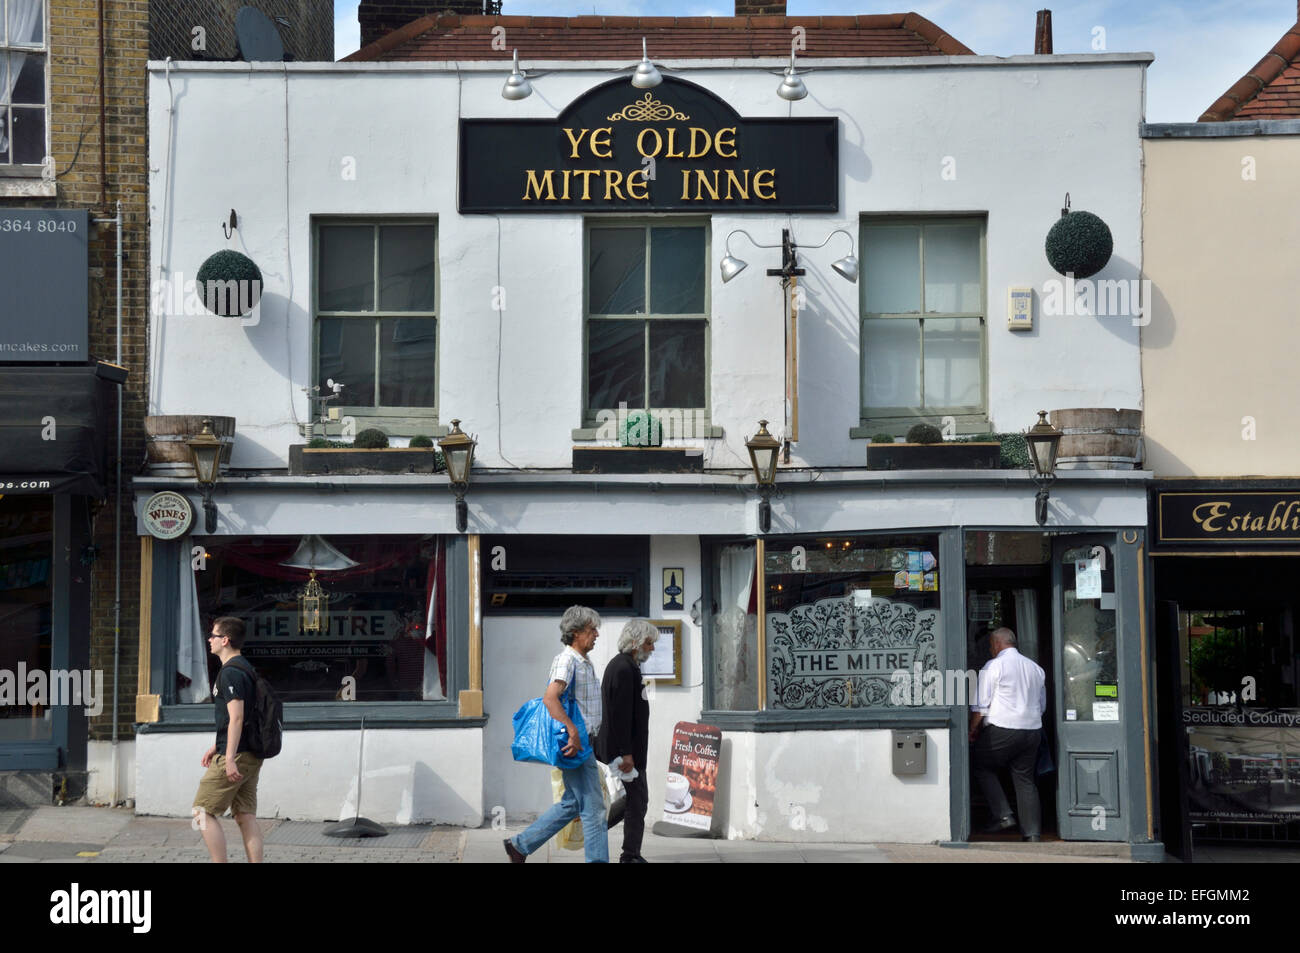 Ye Old Mitre Inn, High Barnet, London, UK Stock Photo